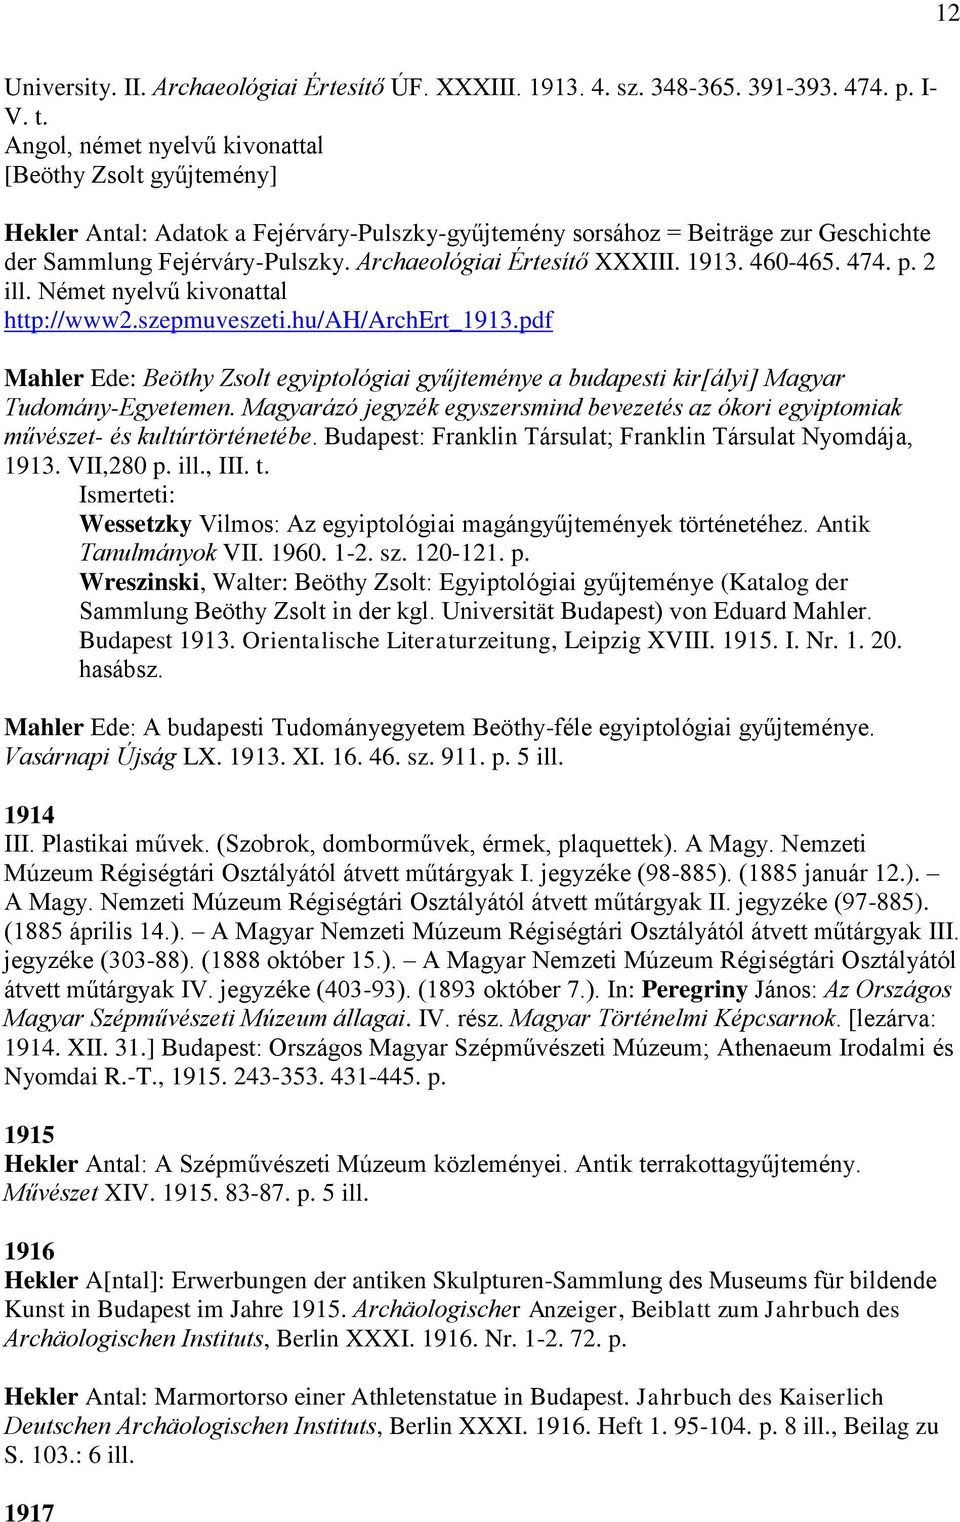 Archaeológiai Értesítő XXXIII. 1913. 460-465. 474. p. 2 ill. Német nyelvű kivonattal http://www2.szepmuveszeti.hu/ah/archert_1913.